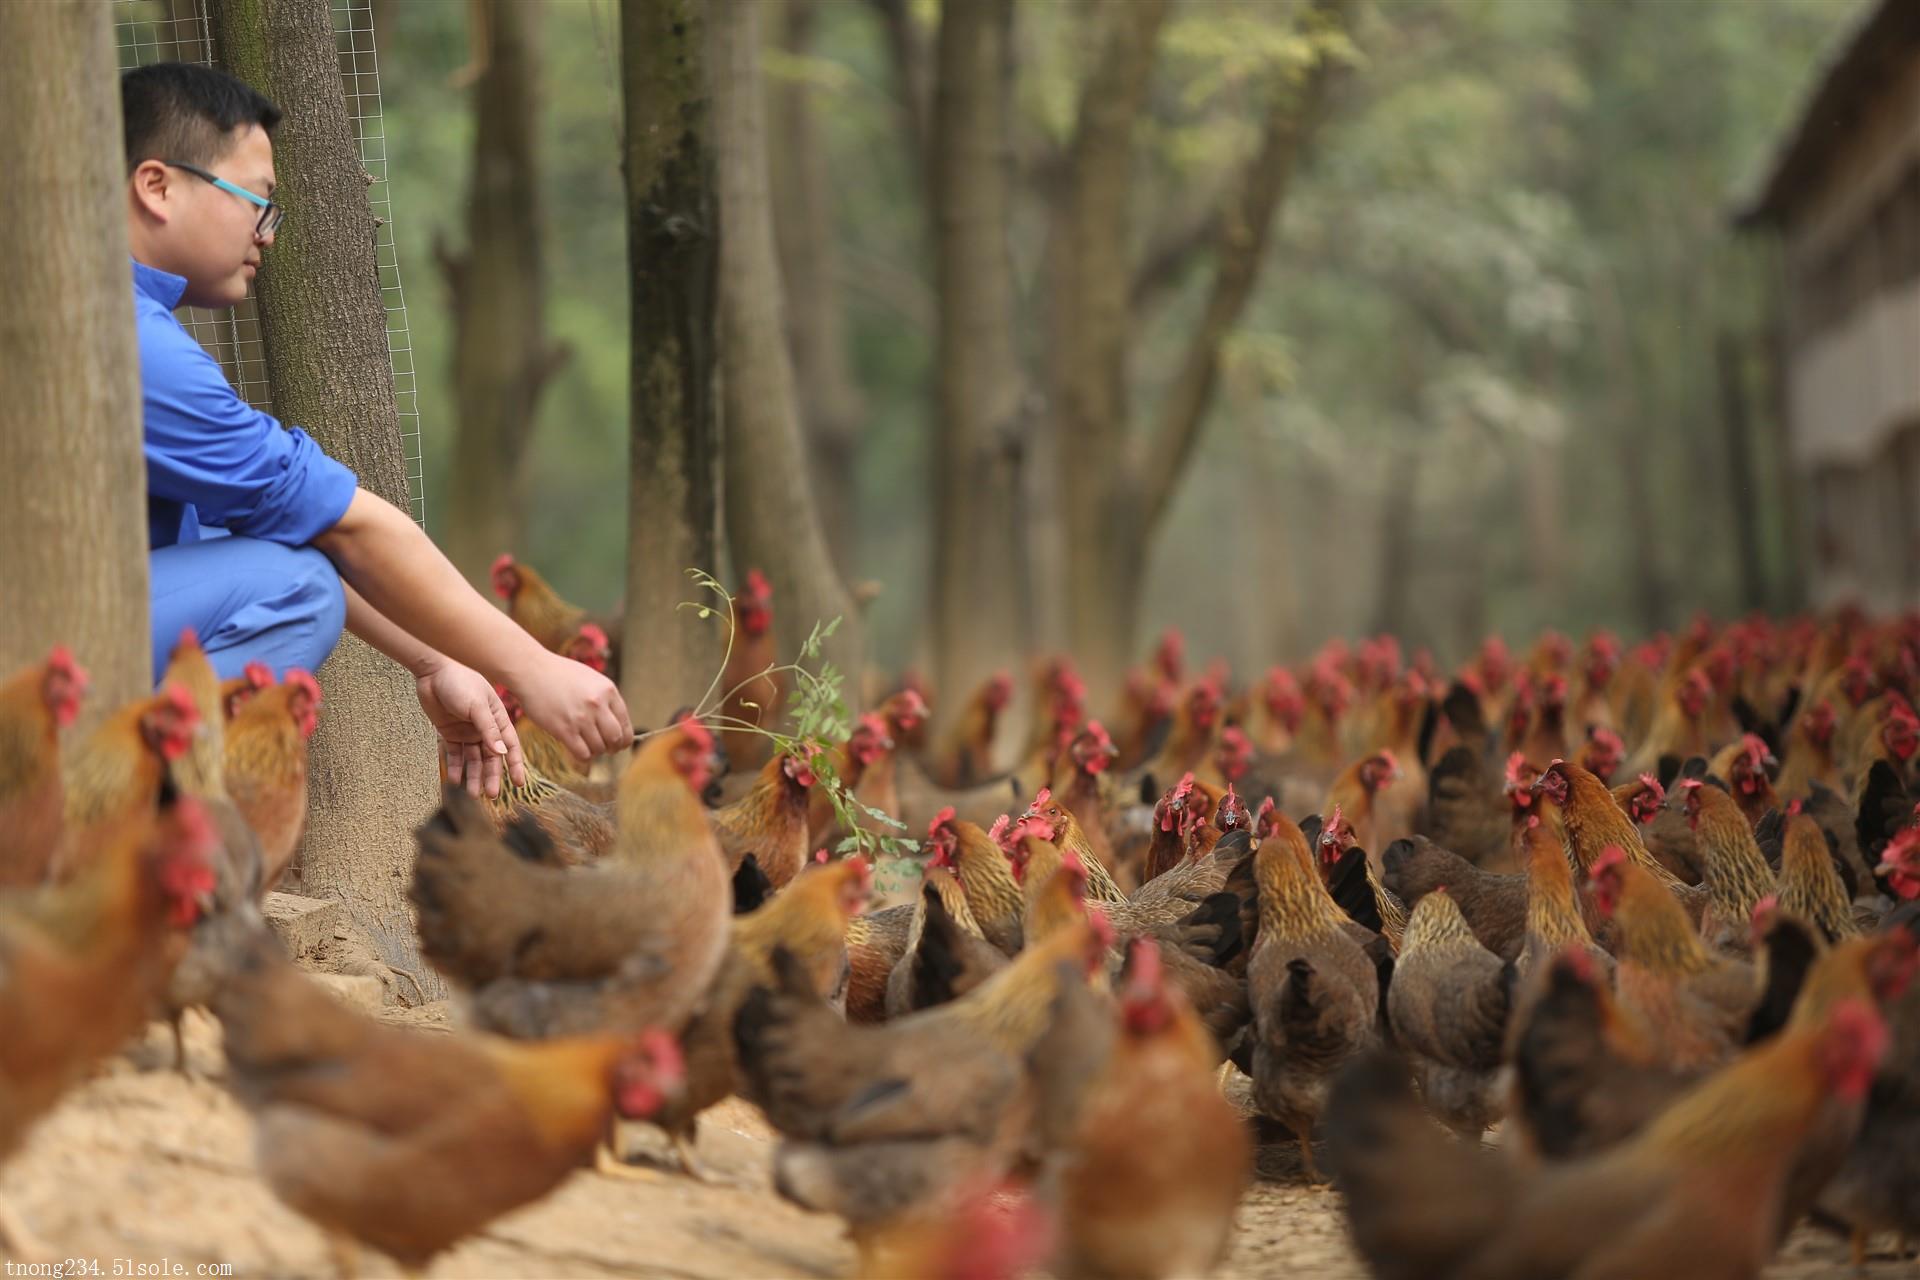 广东天农优品生态清远鸡特种养殖土鸡散养新鲜